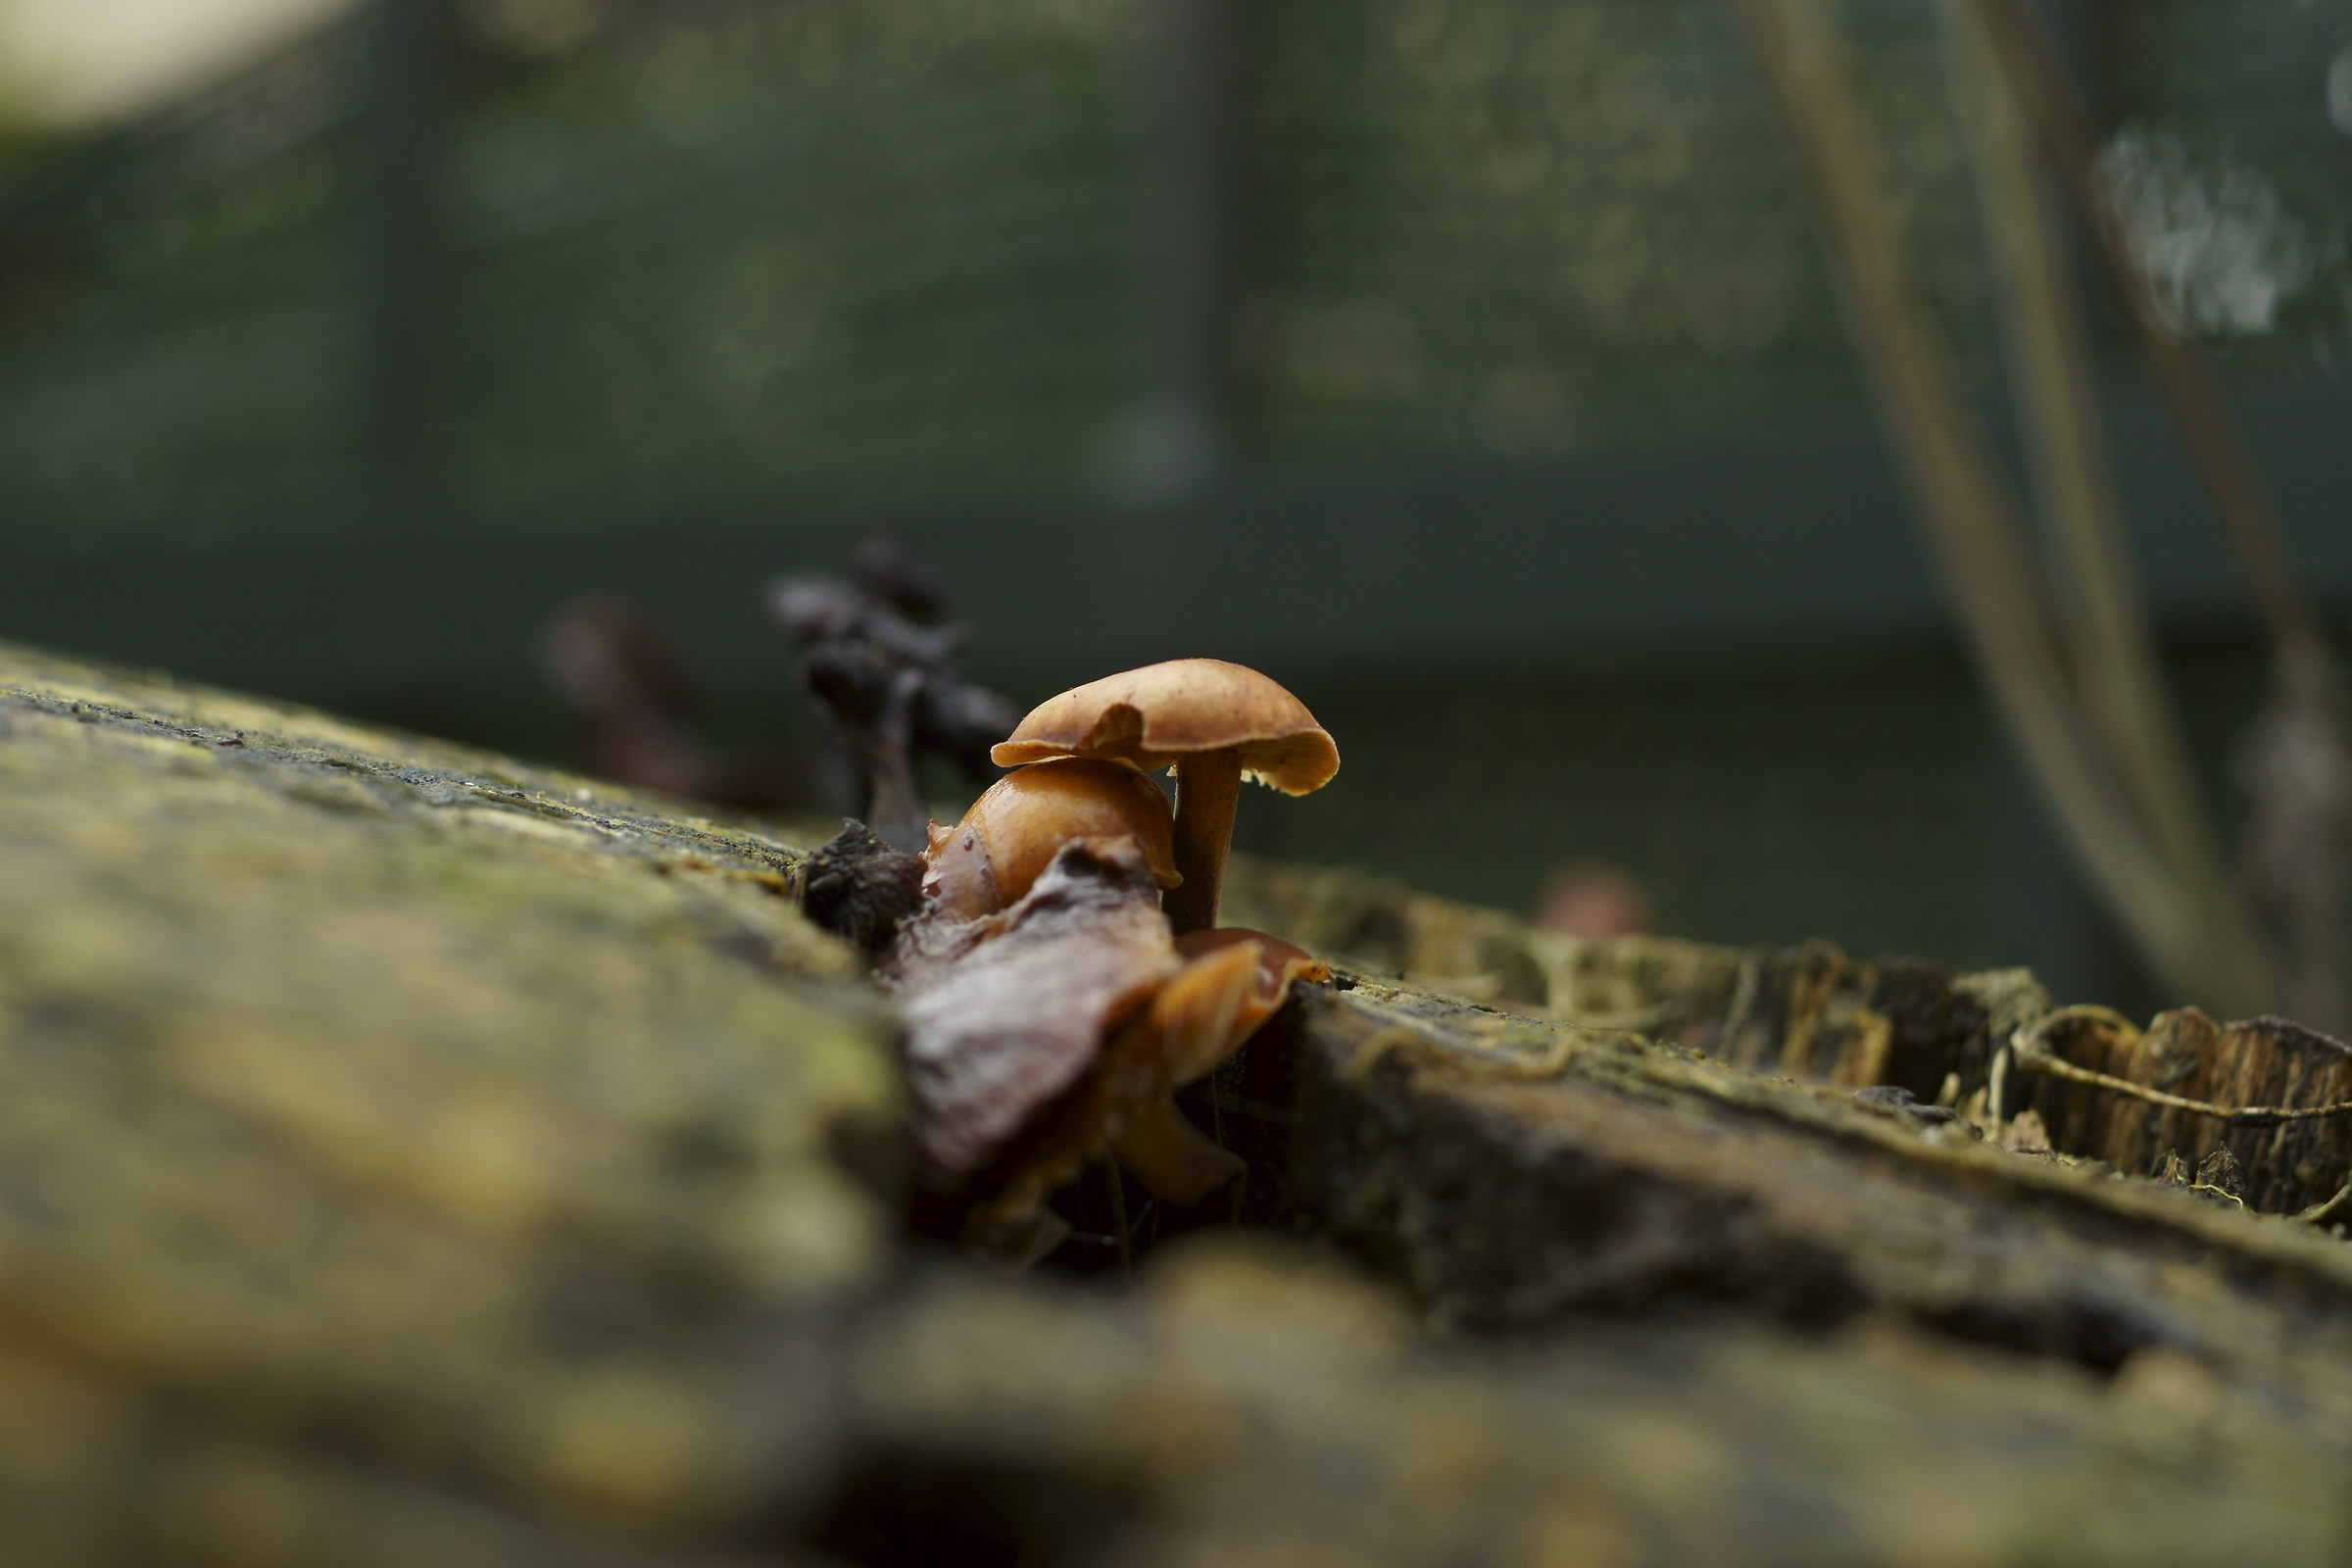 mushroom...